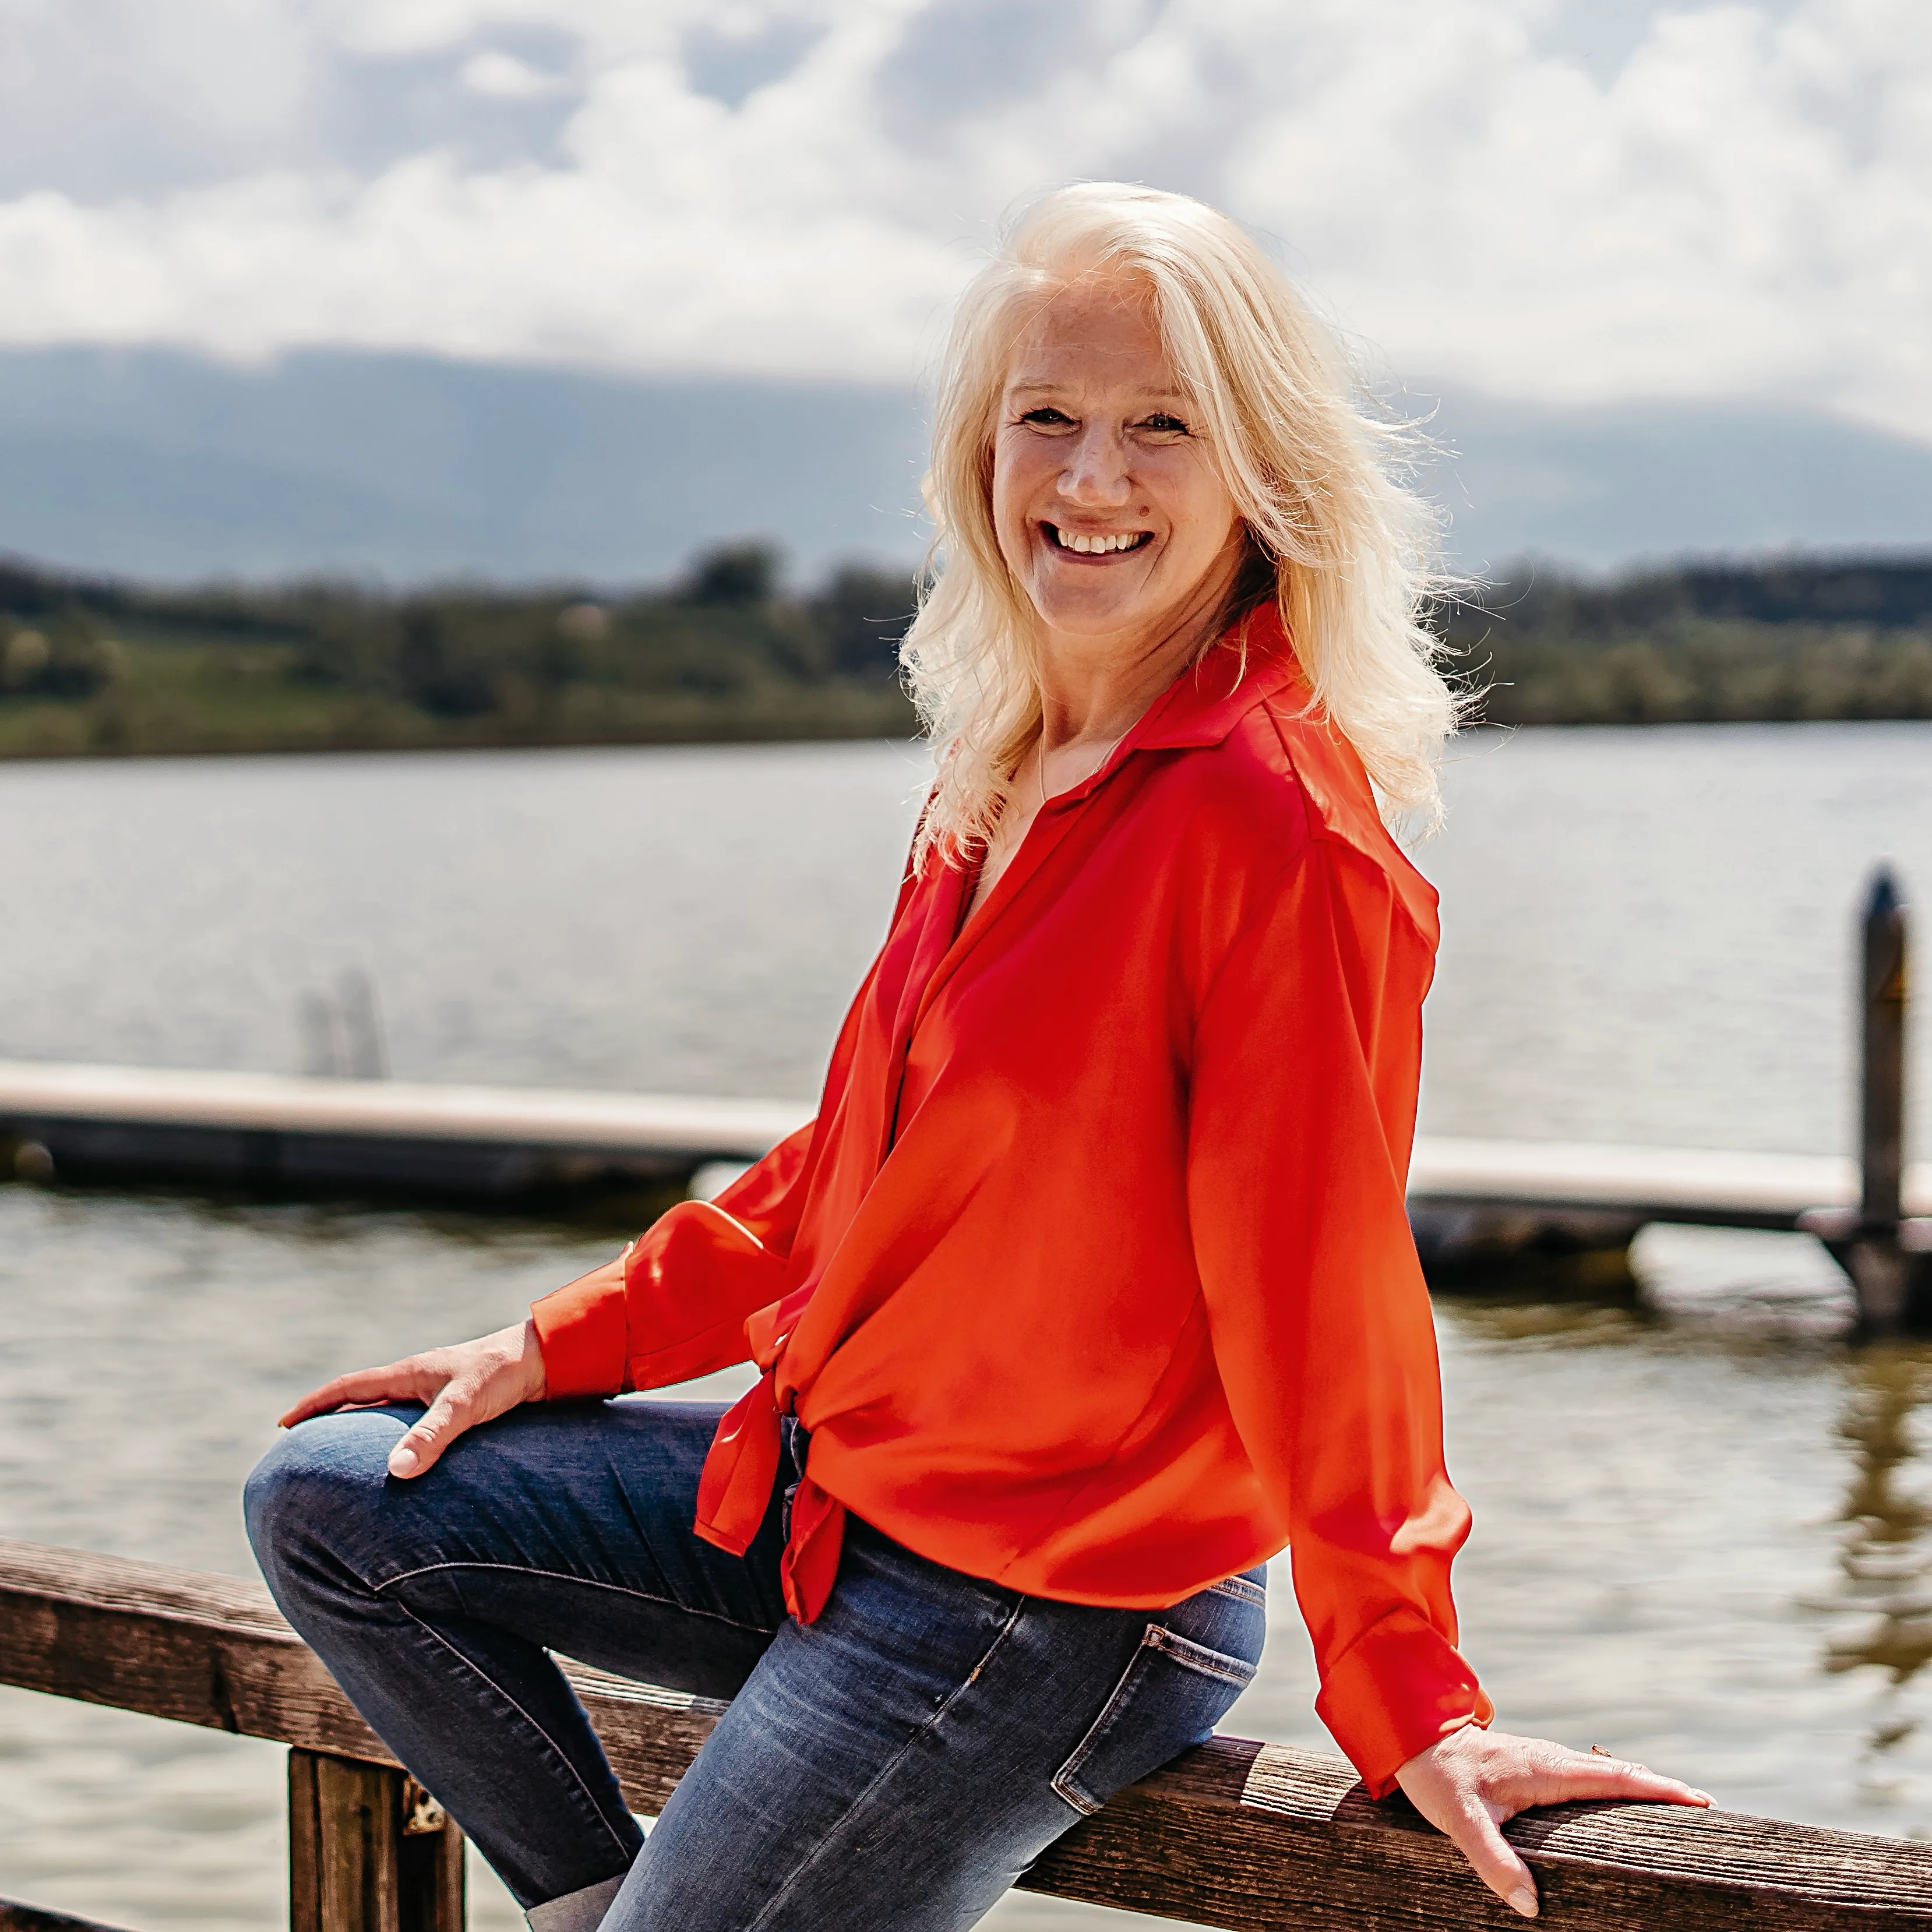 Sabine Kohl mit roter Bluse auf Geländer am See